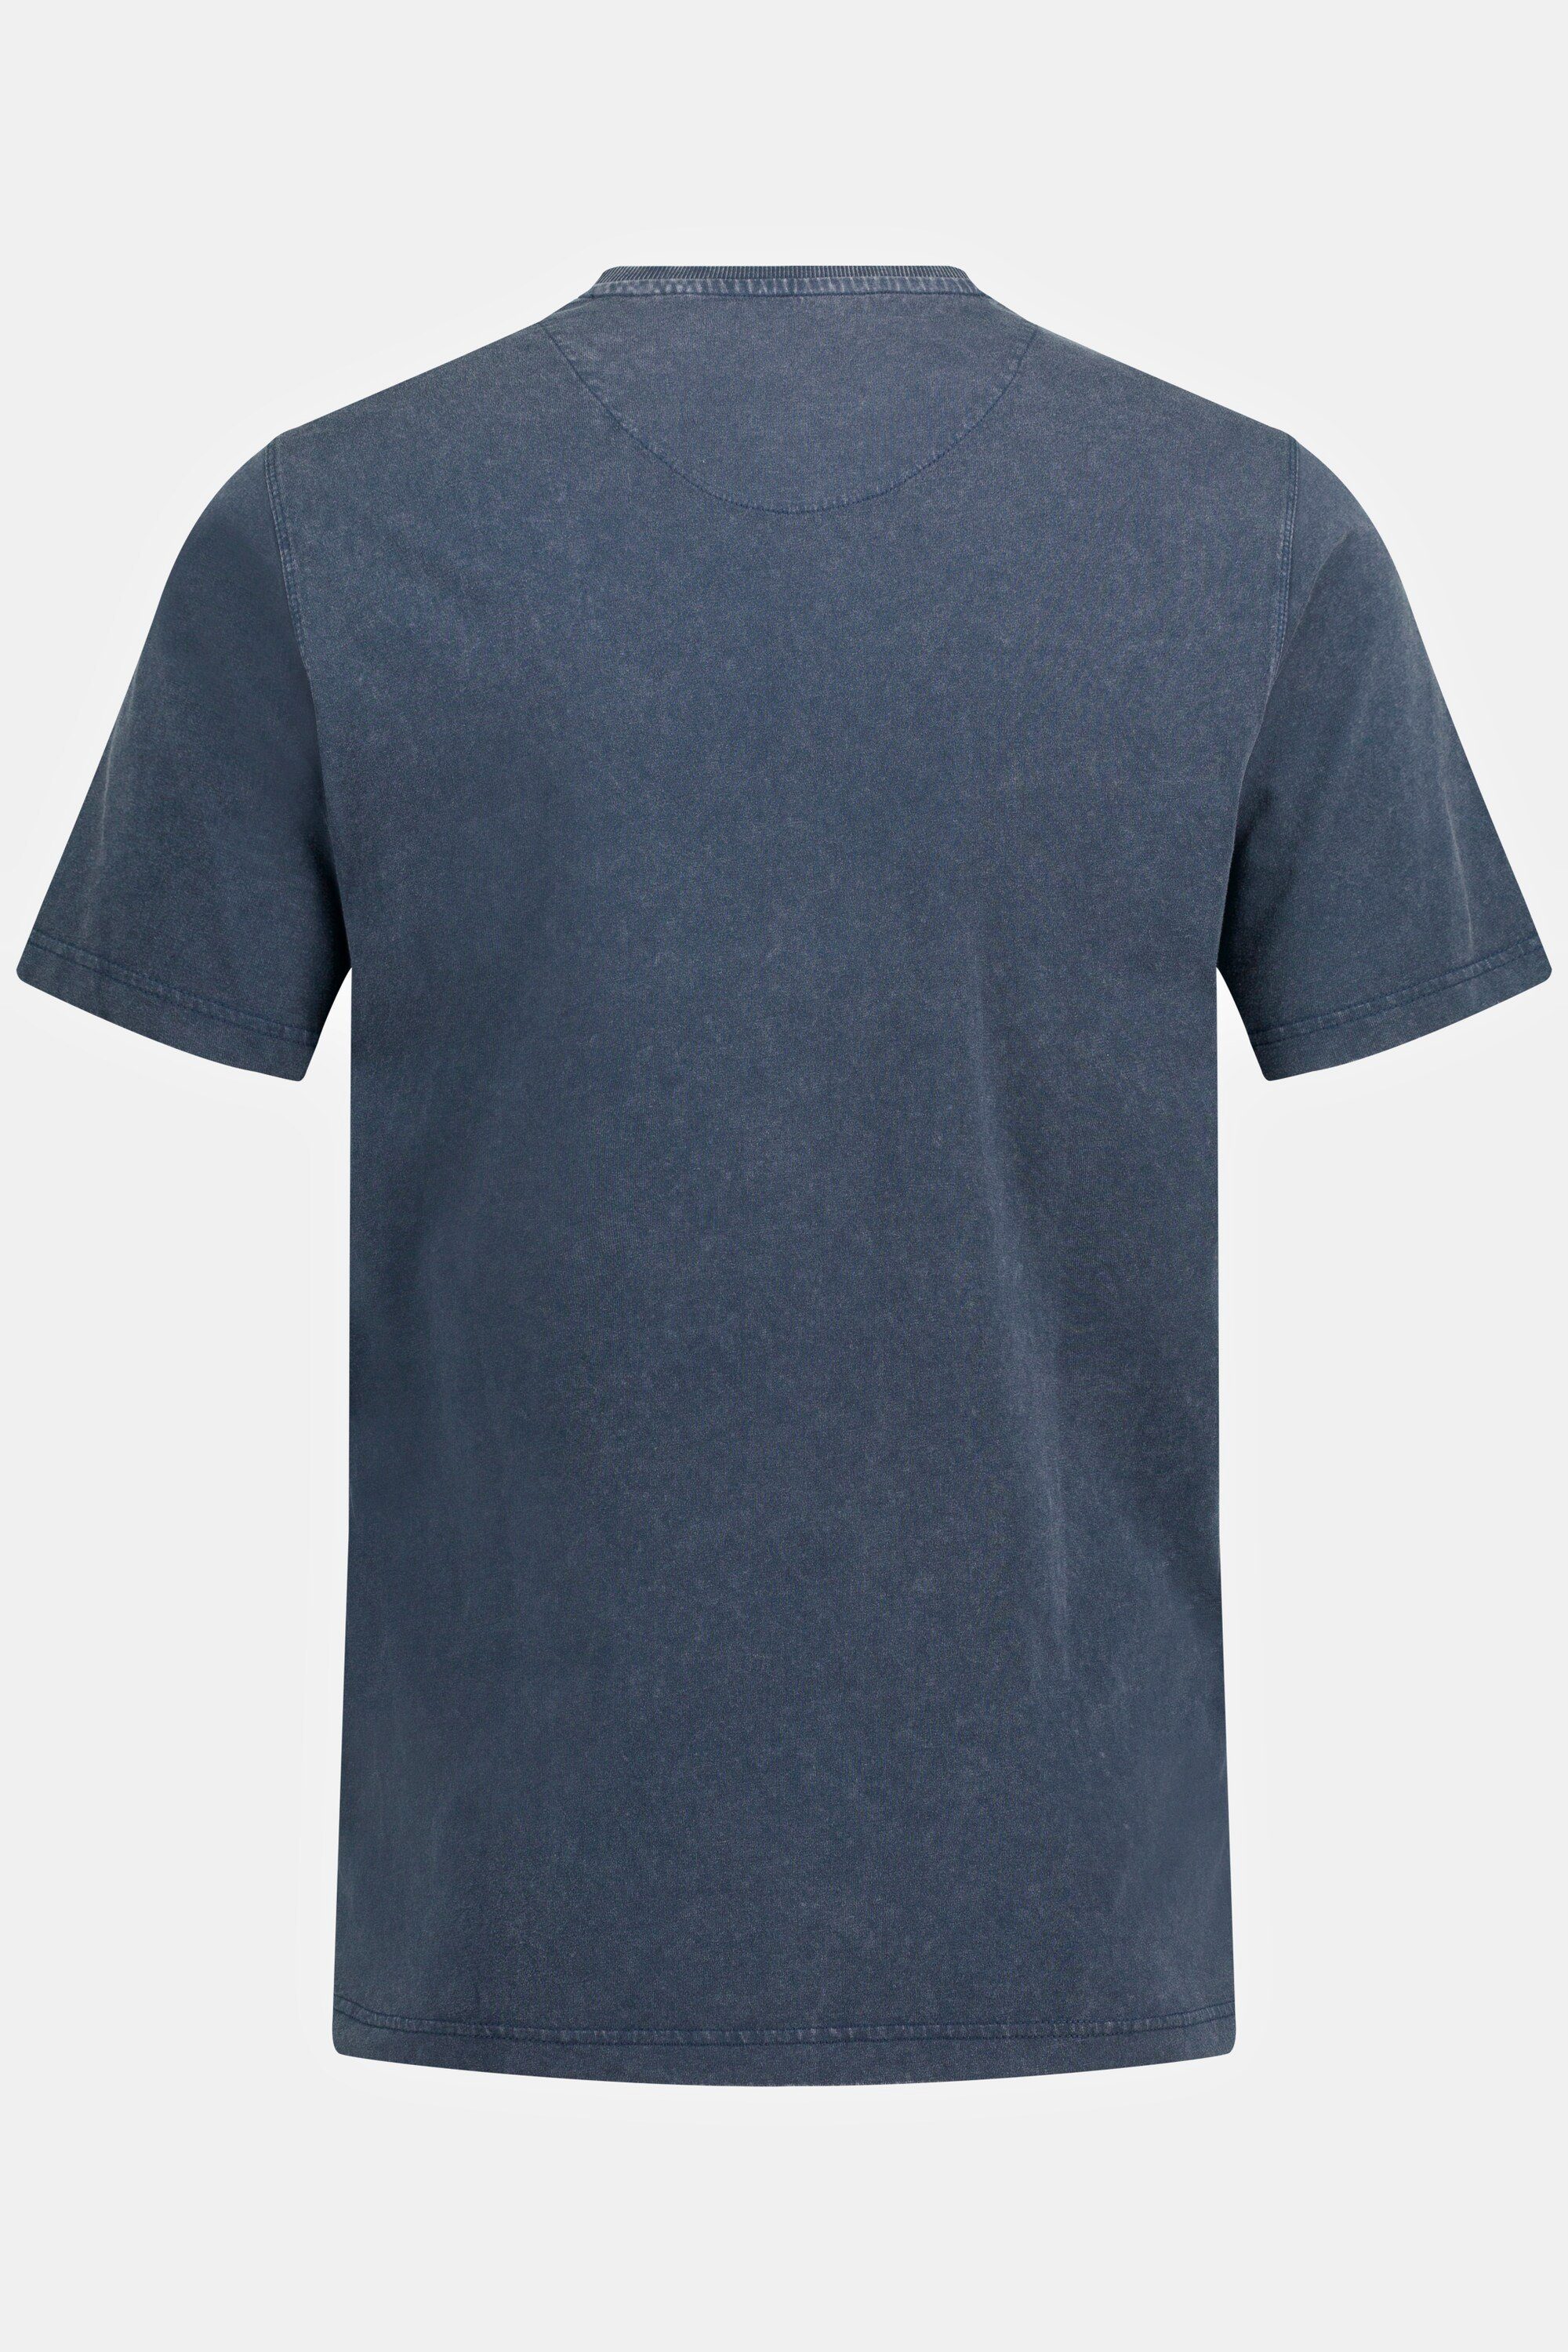 JP1880 T-Shirt T-Shirt nachtblau Rundhals Halbarm Brusttasche mattes